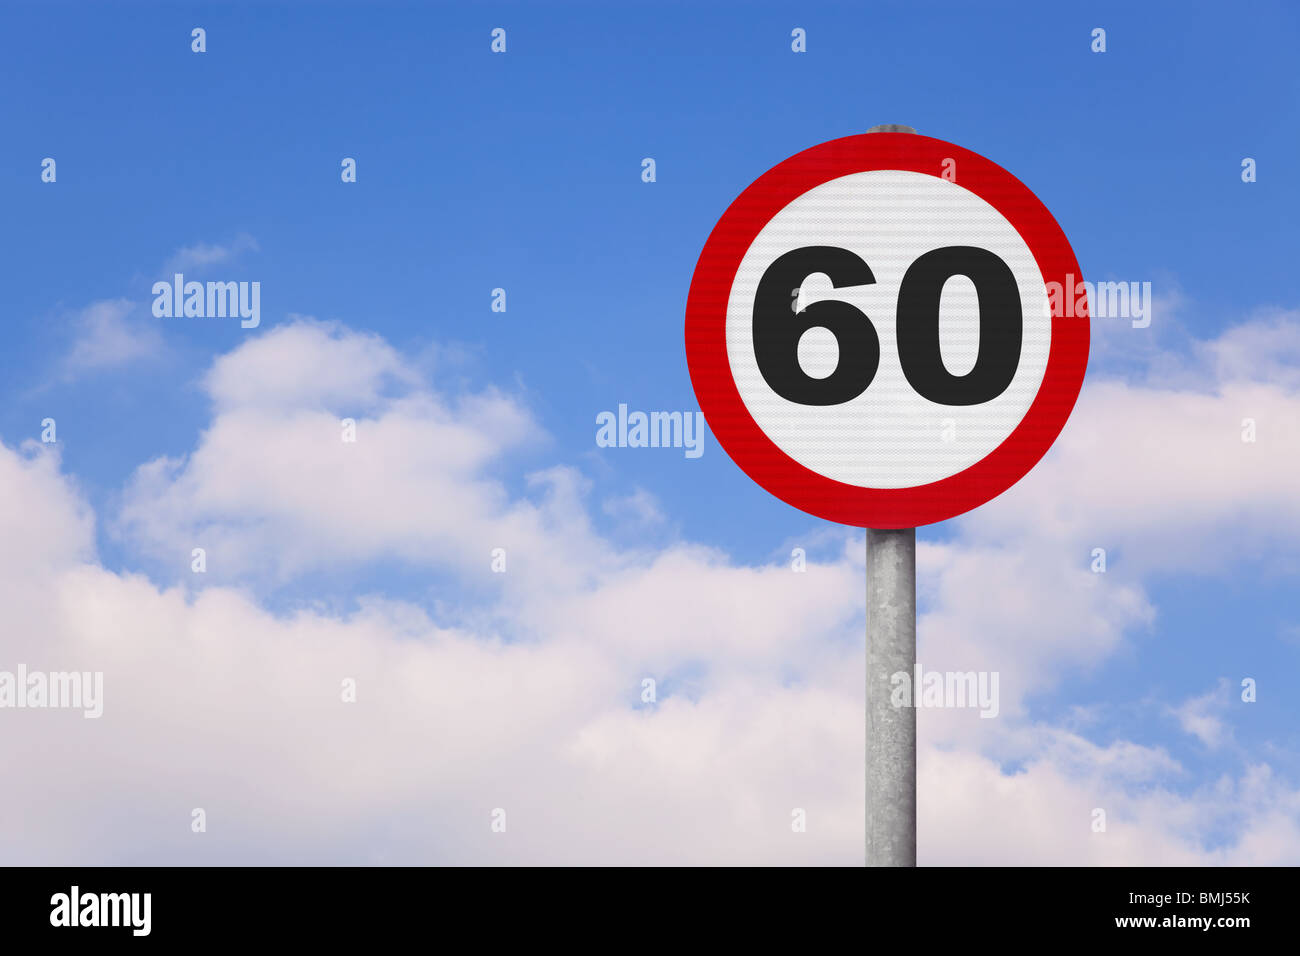 une-ronde-roadsign-avec-le-numero-60-sur-le-contre-un-bleu-ciel-nuageux-bmj55k.jpg